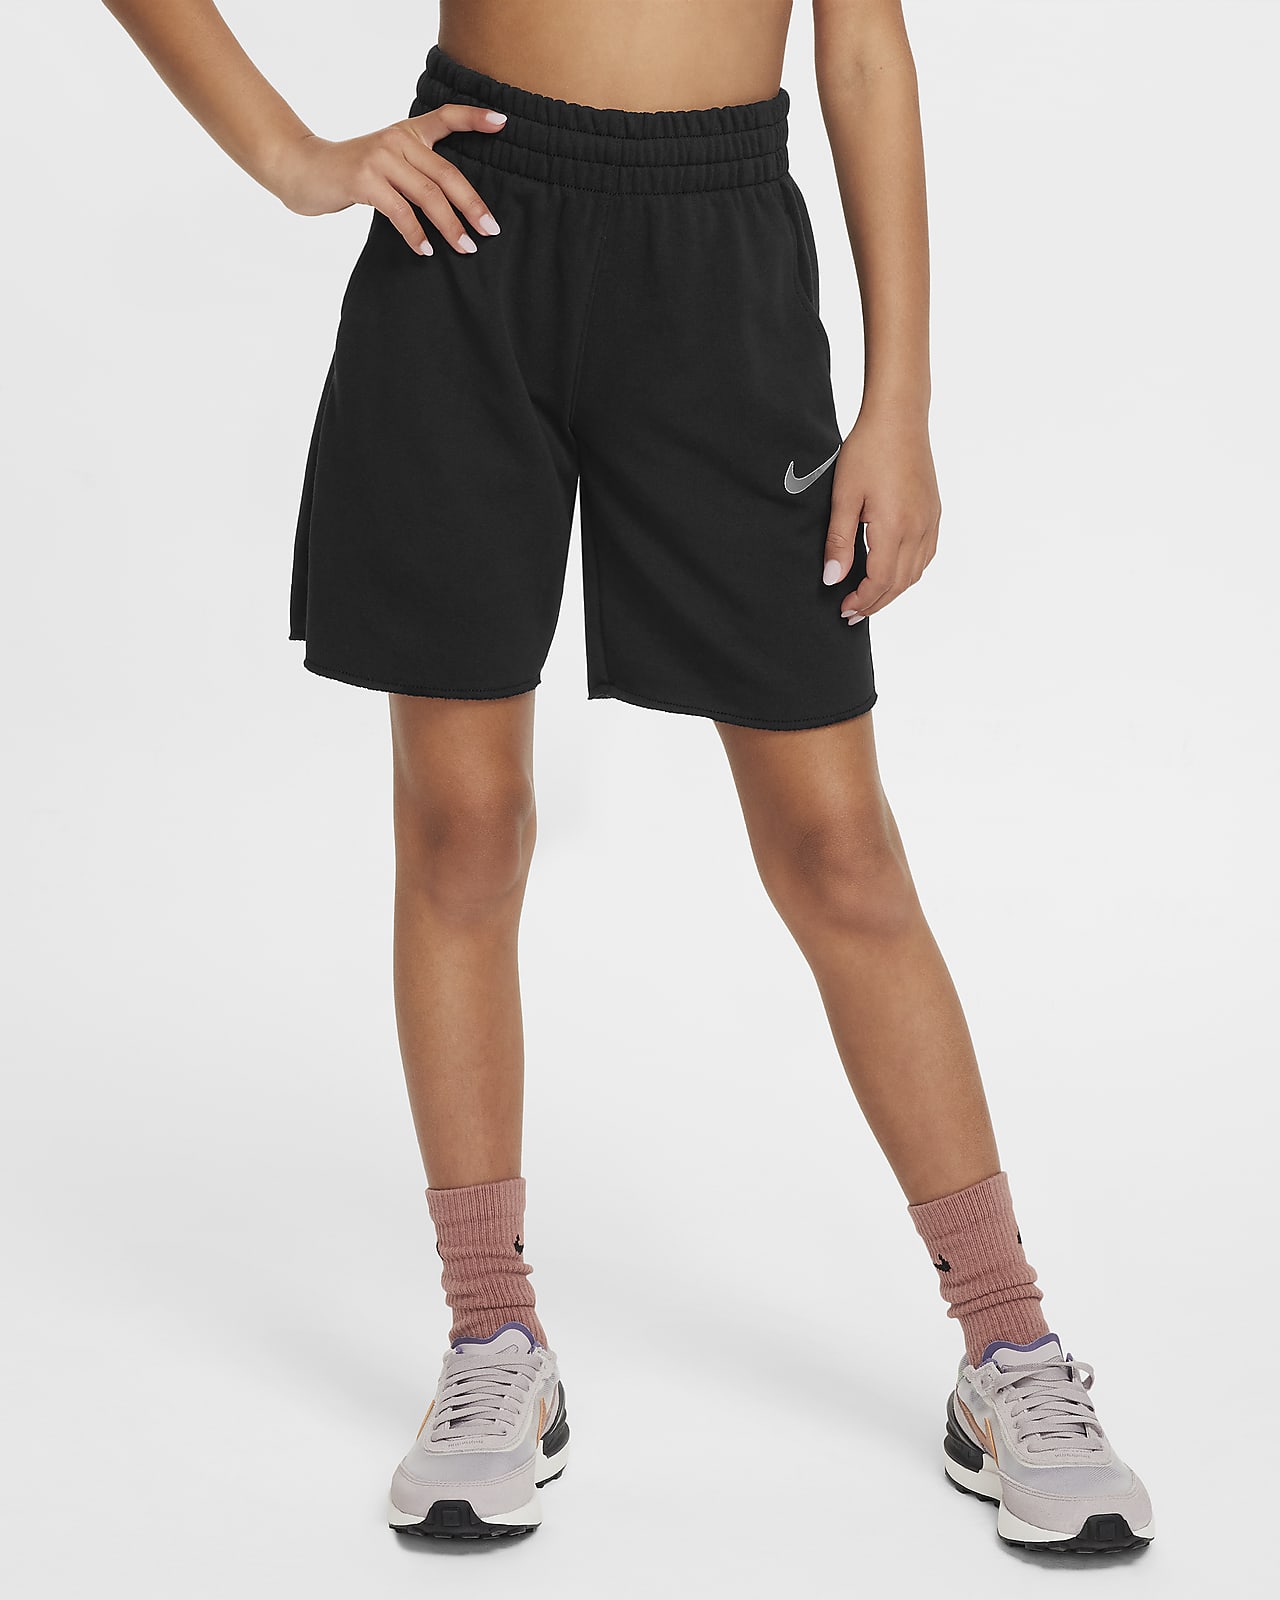 Flísové kraťasy Nike Sportswear Dri-FIT pro větší děti (dívky)